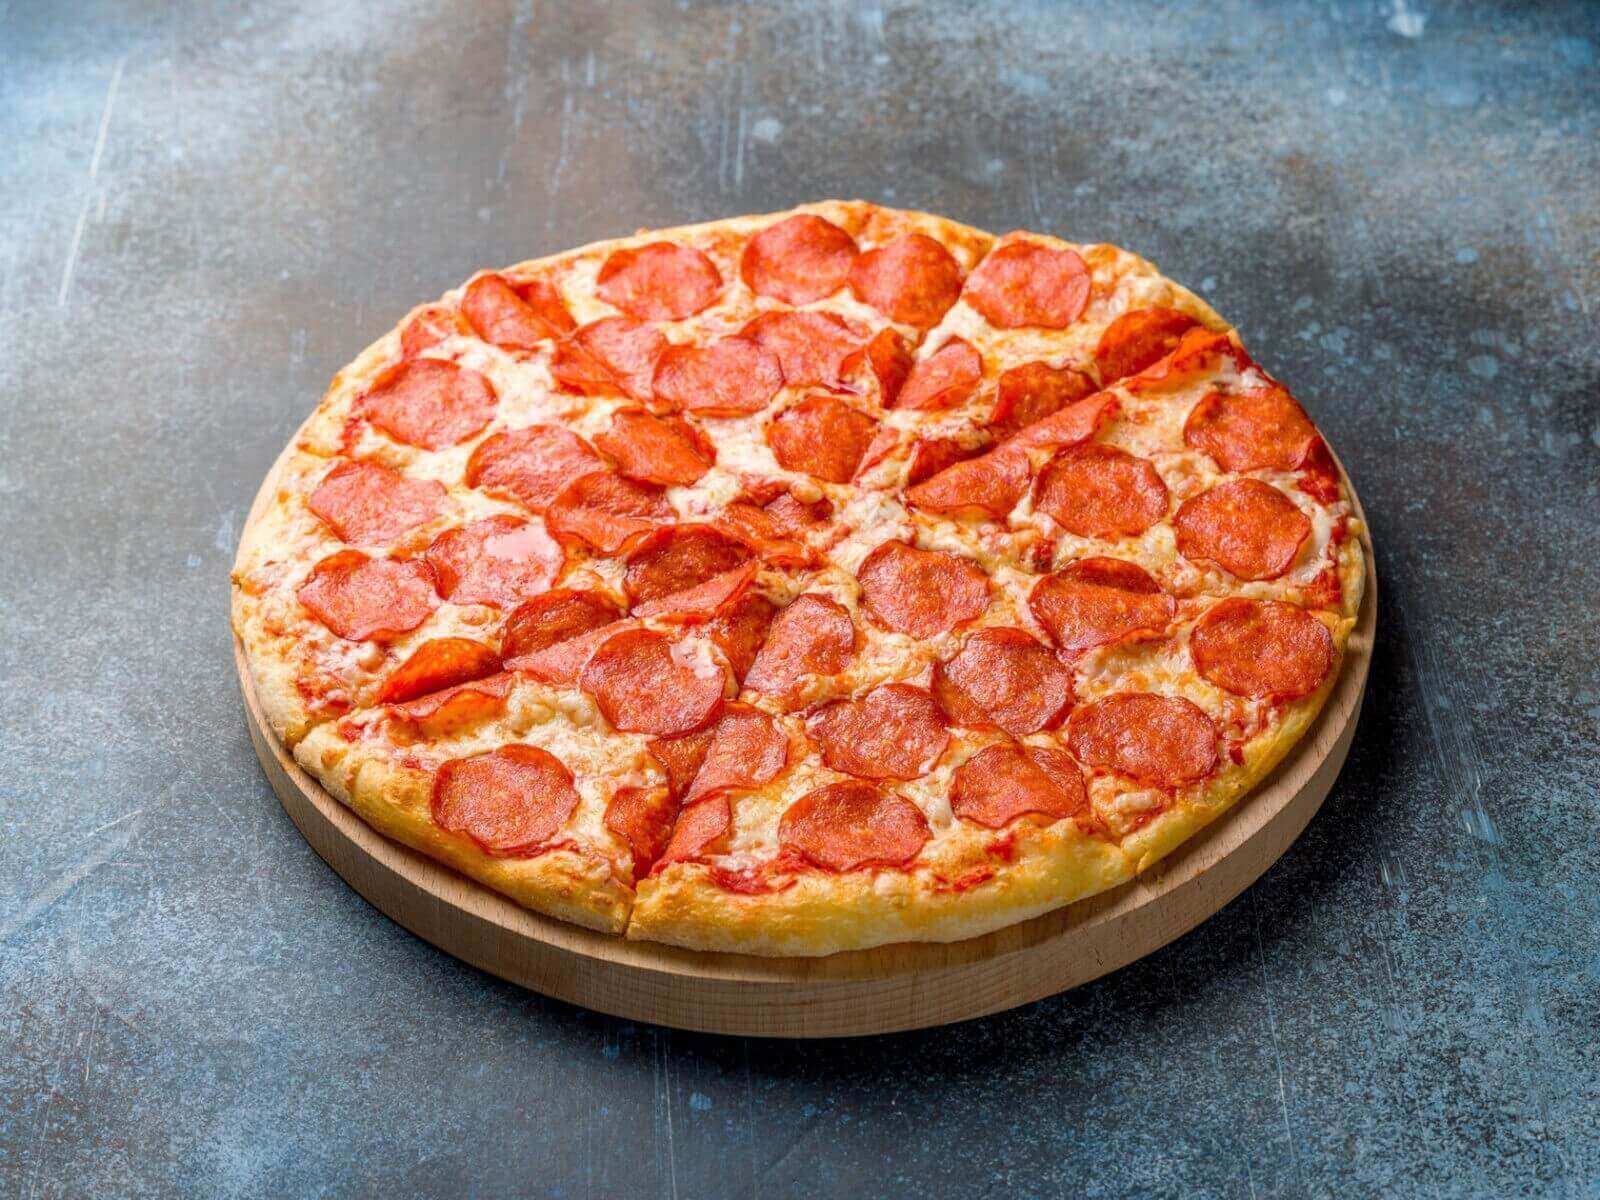 я хочу пиццу с перцем луком пепперони и оливками фото 59